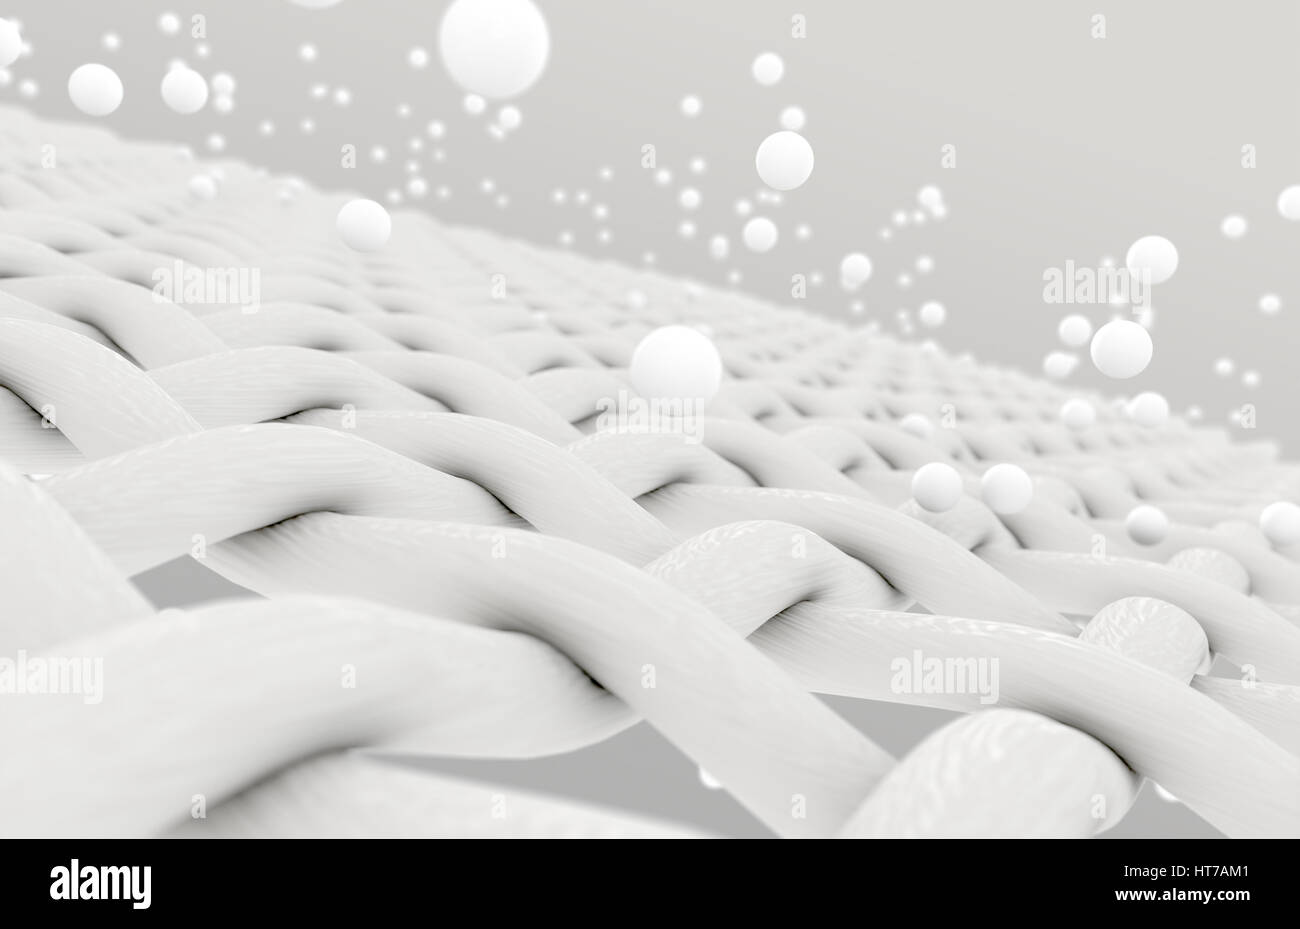 Rendern Sie eine extreme Vergrößerung des weißen einzelner Gewebe Fäden, die durch weiße Partikel auf einem isolierten Hintergrund - 3D Reinigung eingedrungen Stockfoto